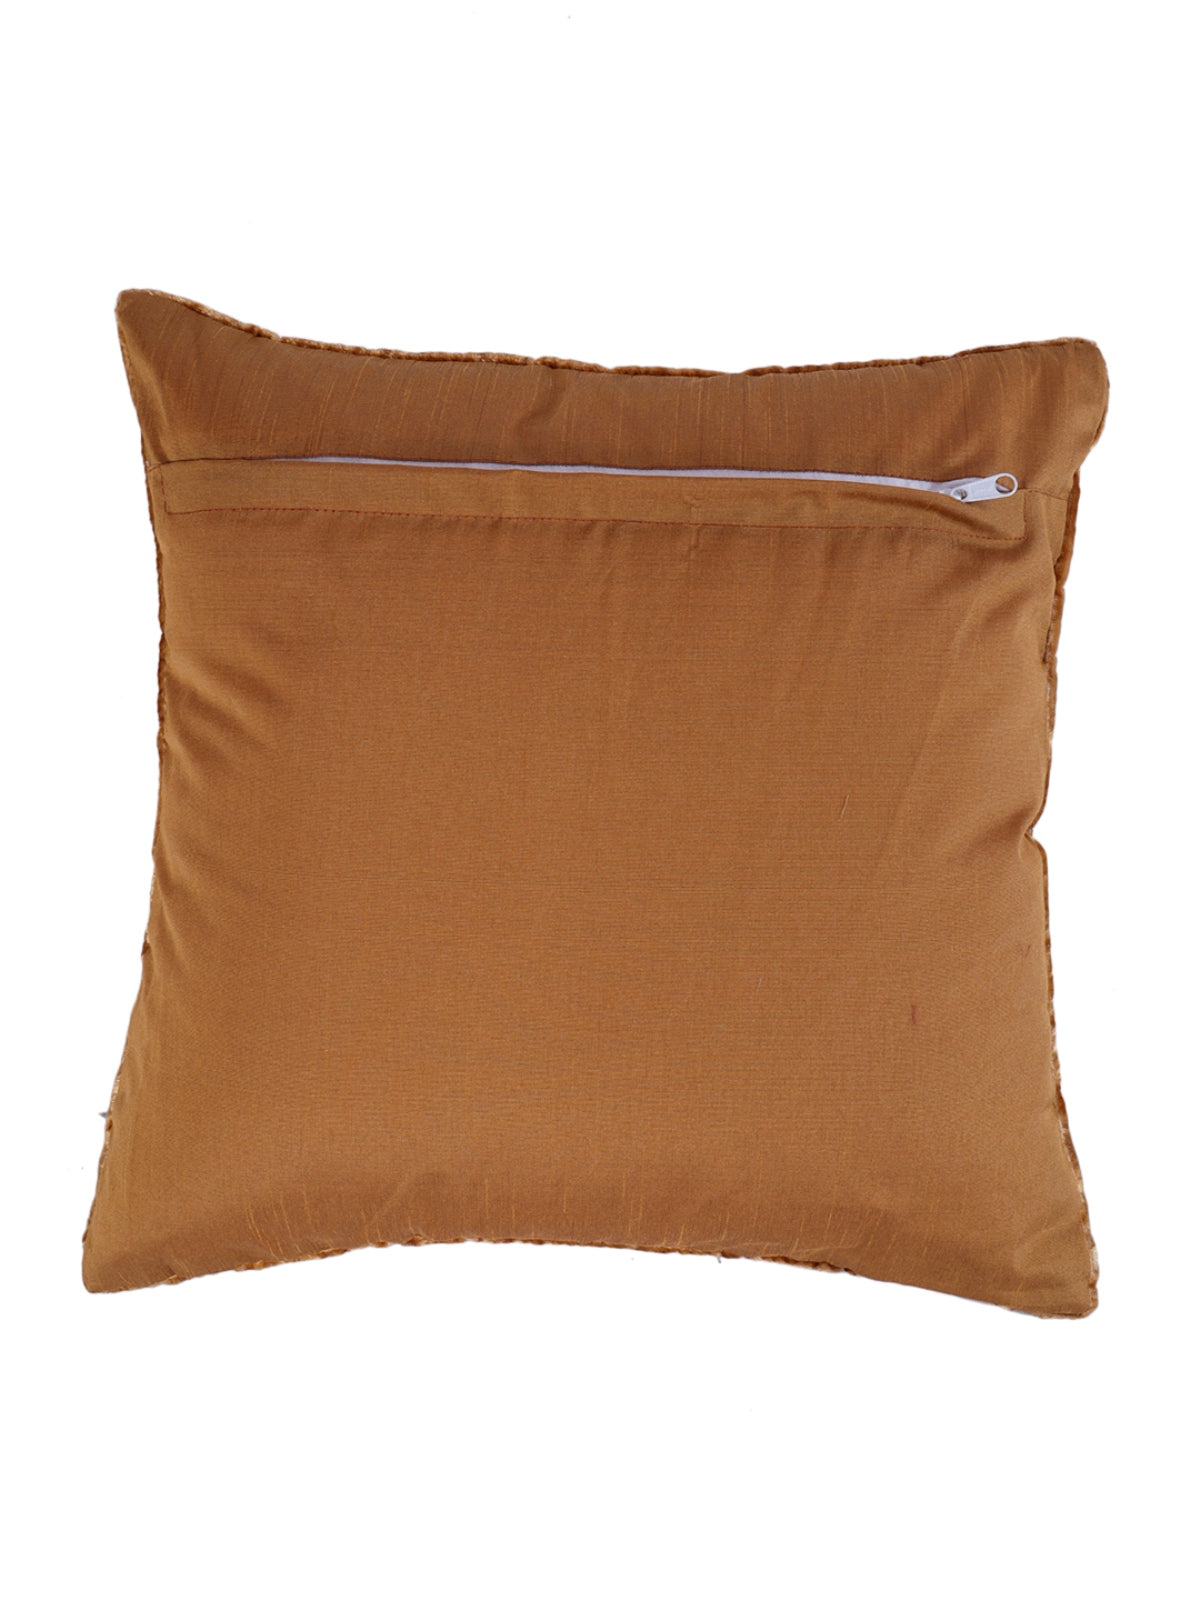 Velvet Tree Designer Cushion Cover 16x16 Inche, Set of 5 - Brown